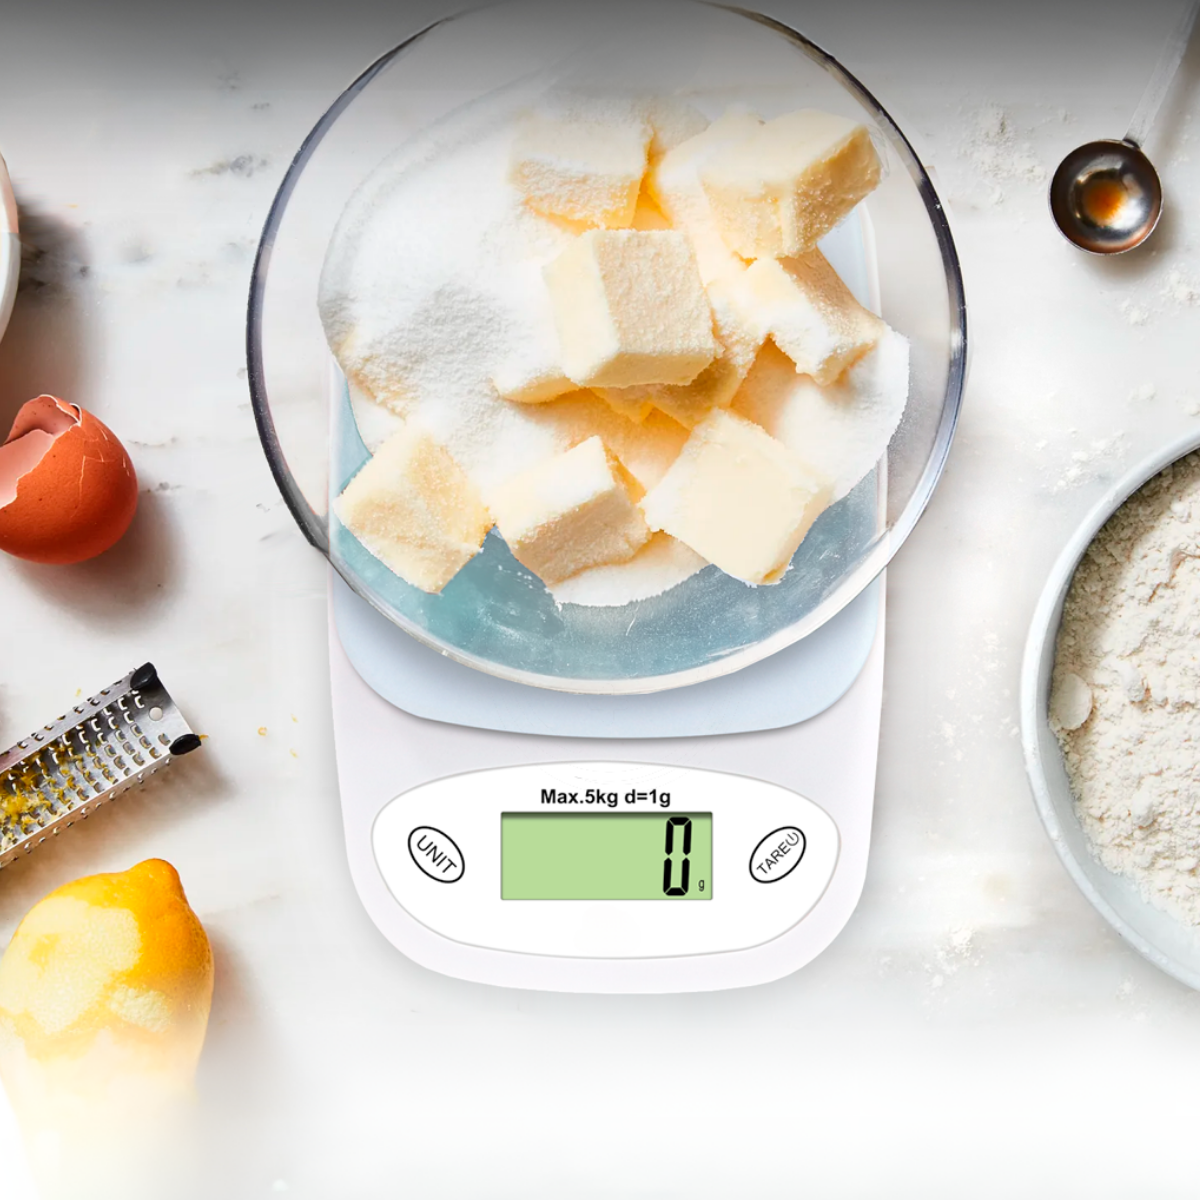 Balanza de Cocina Digital: ¿Cómo Leer su Peso Fácilmente